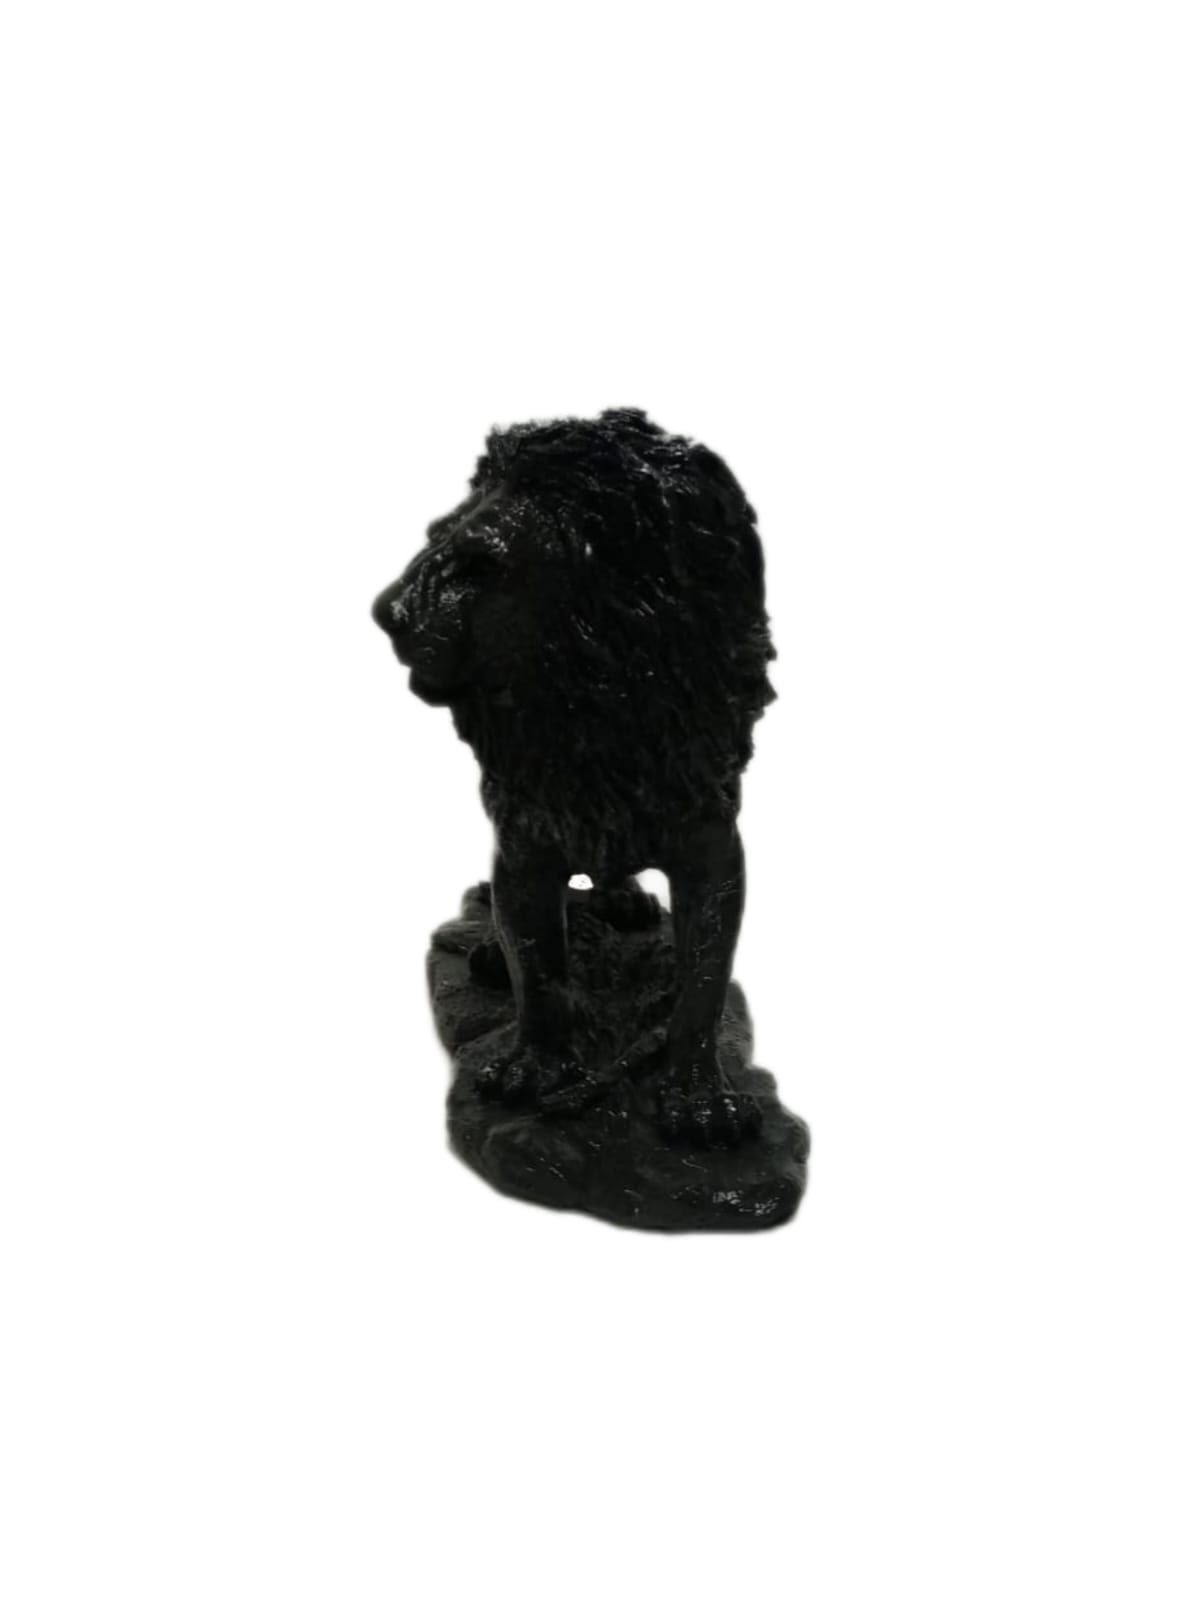 Schwarz Dekofigur Löwe moebel17 Skulptur Dekofigur Polyresin Marmoroptik, aus